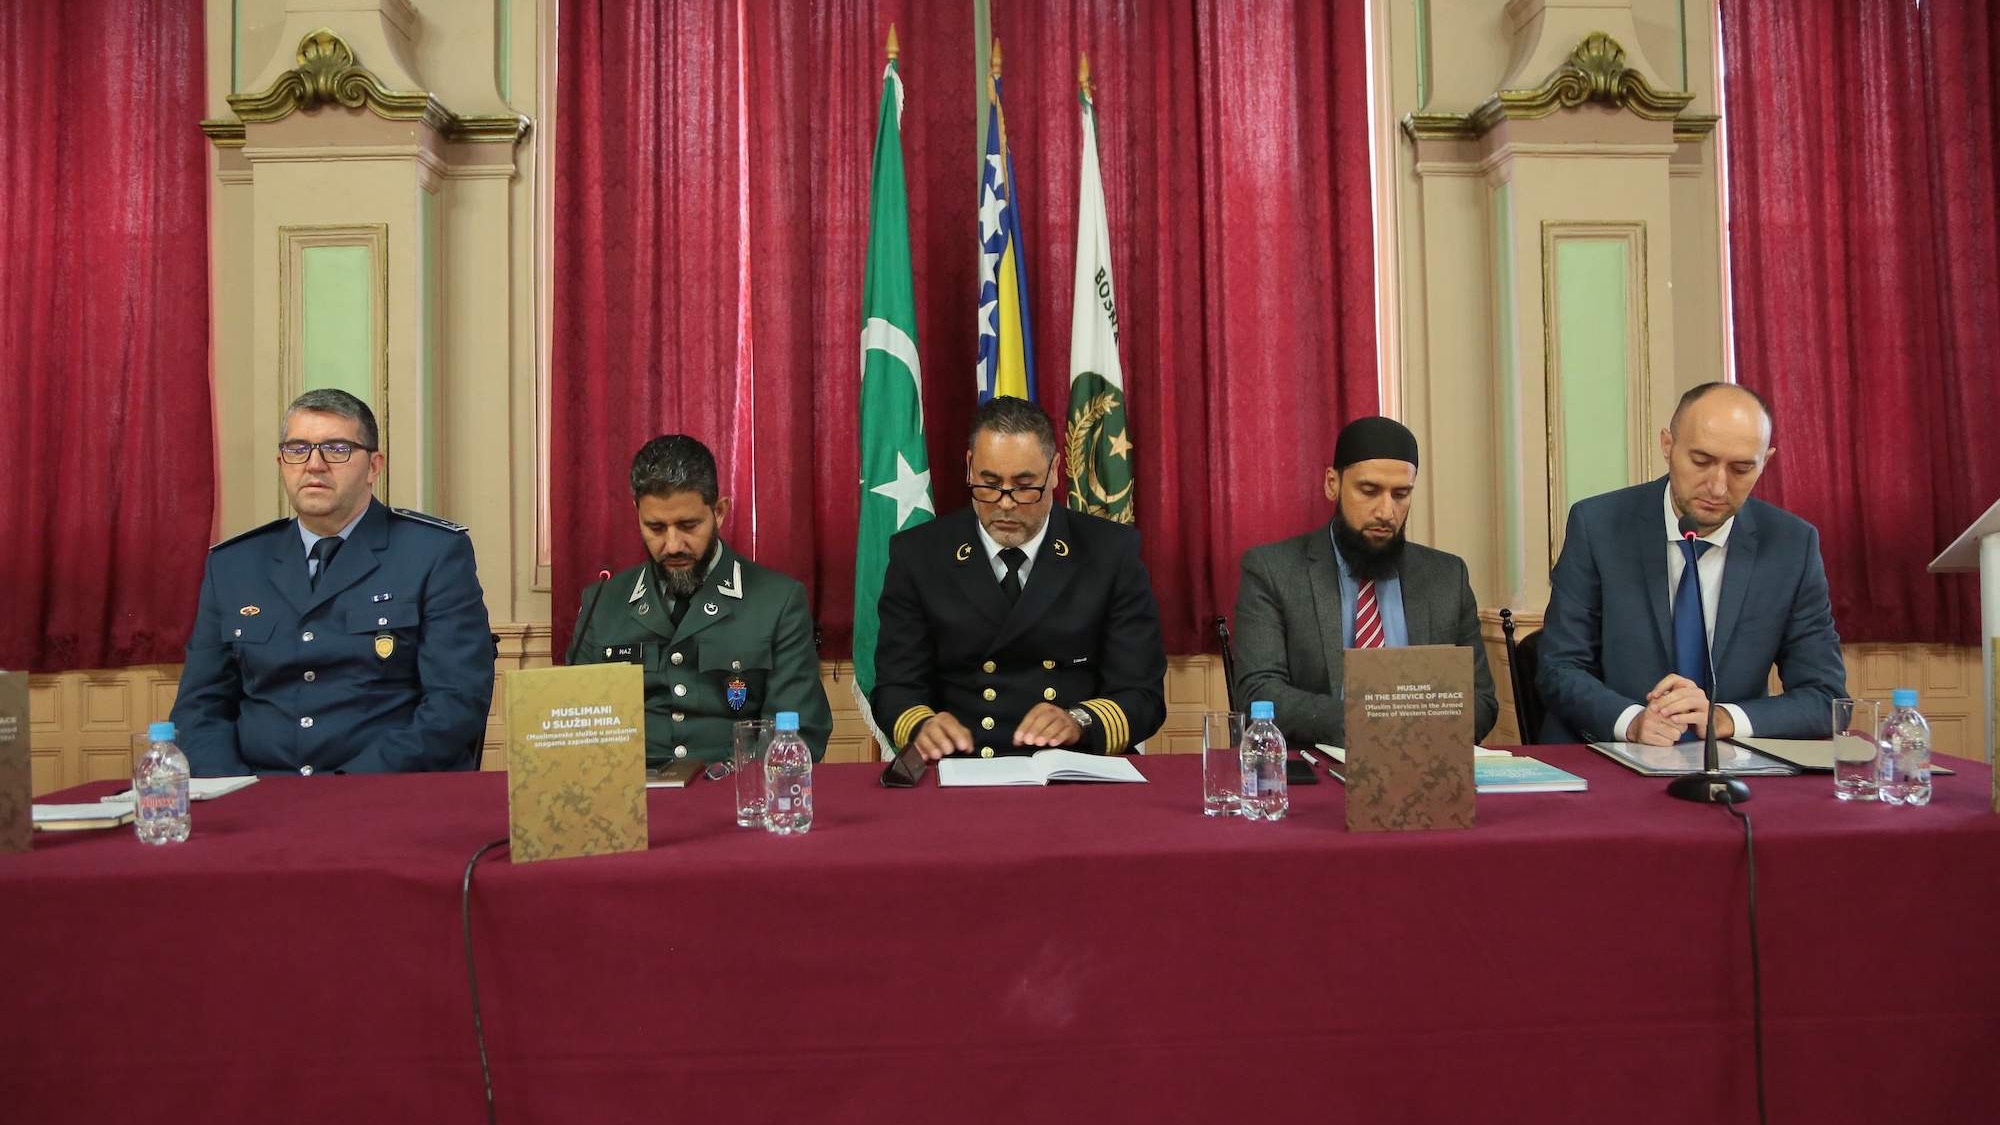 Predstavljen zbornik radova "Muslimani u službi mira - muslimanske službe u oružanim snagama zapadnih zemalja"